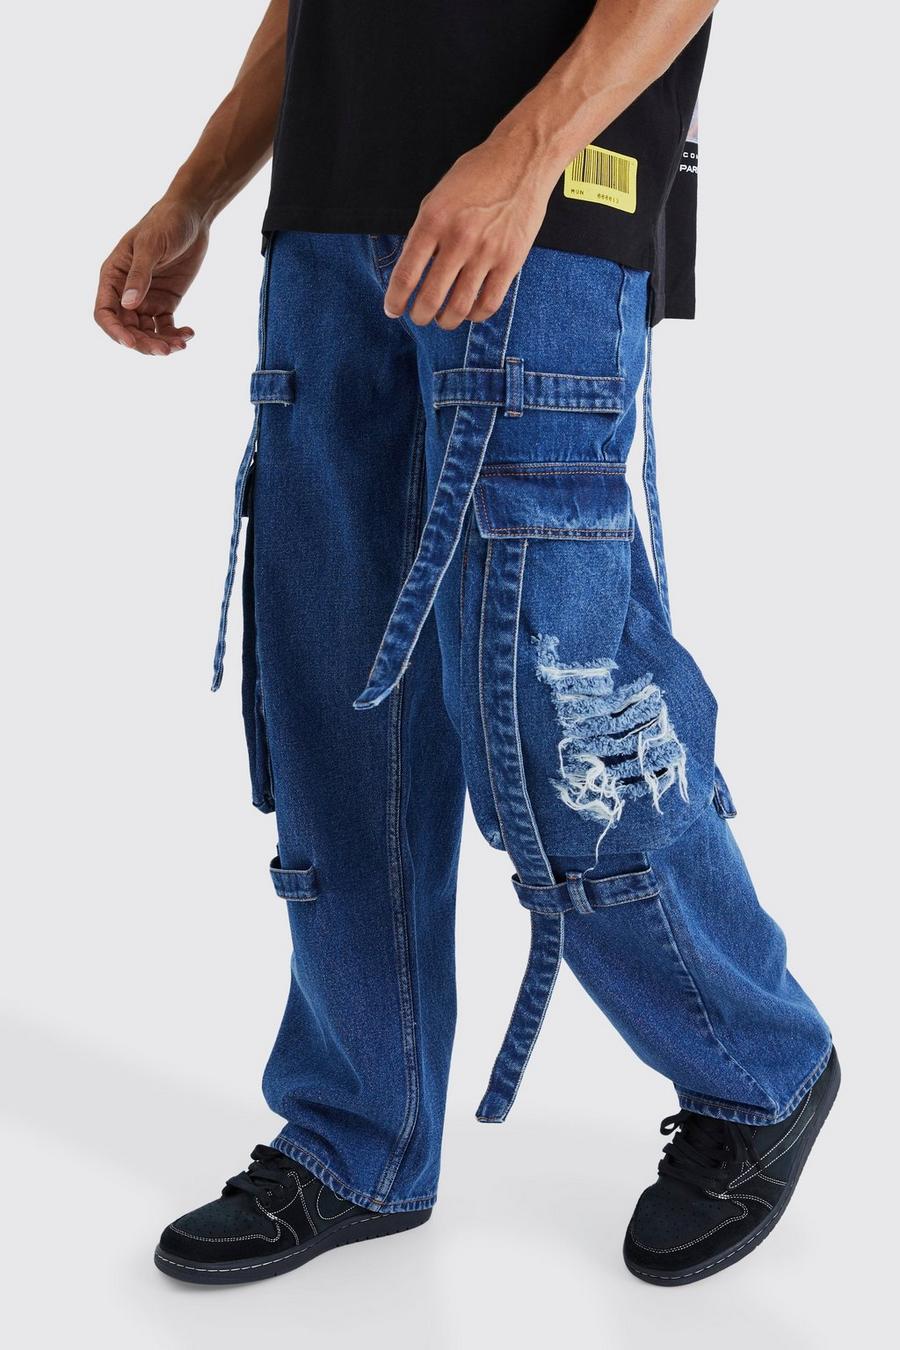 Lockere zerrissene Cargo-Jeans mit Riemchen-Detail, Mid blue